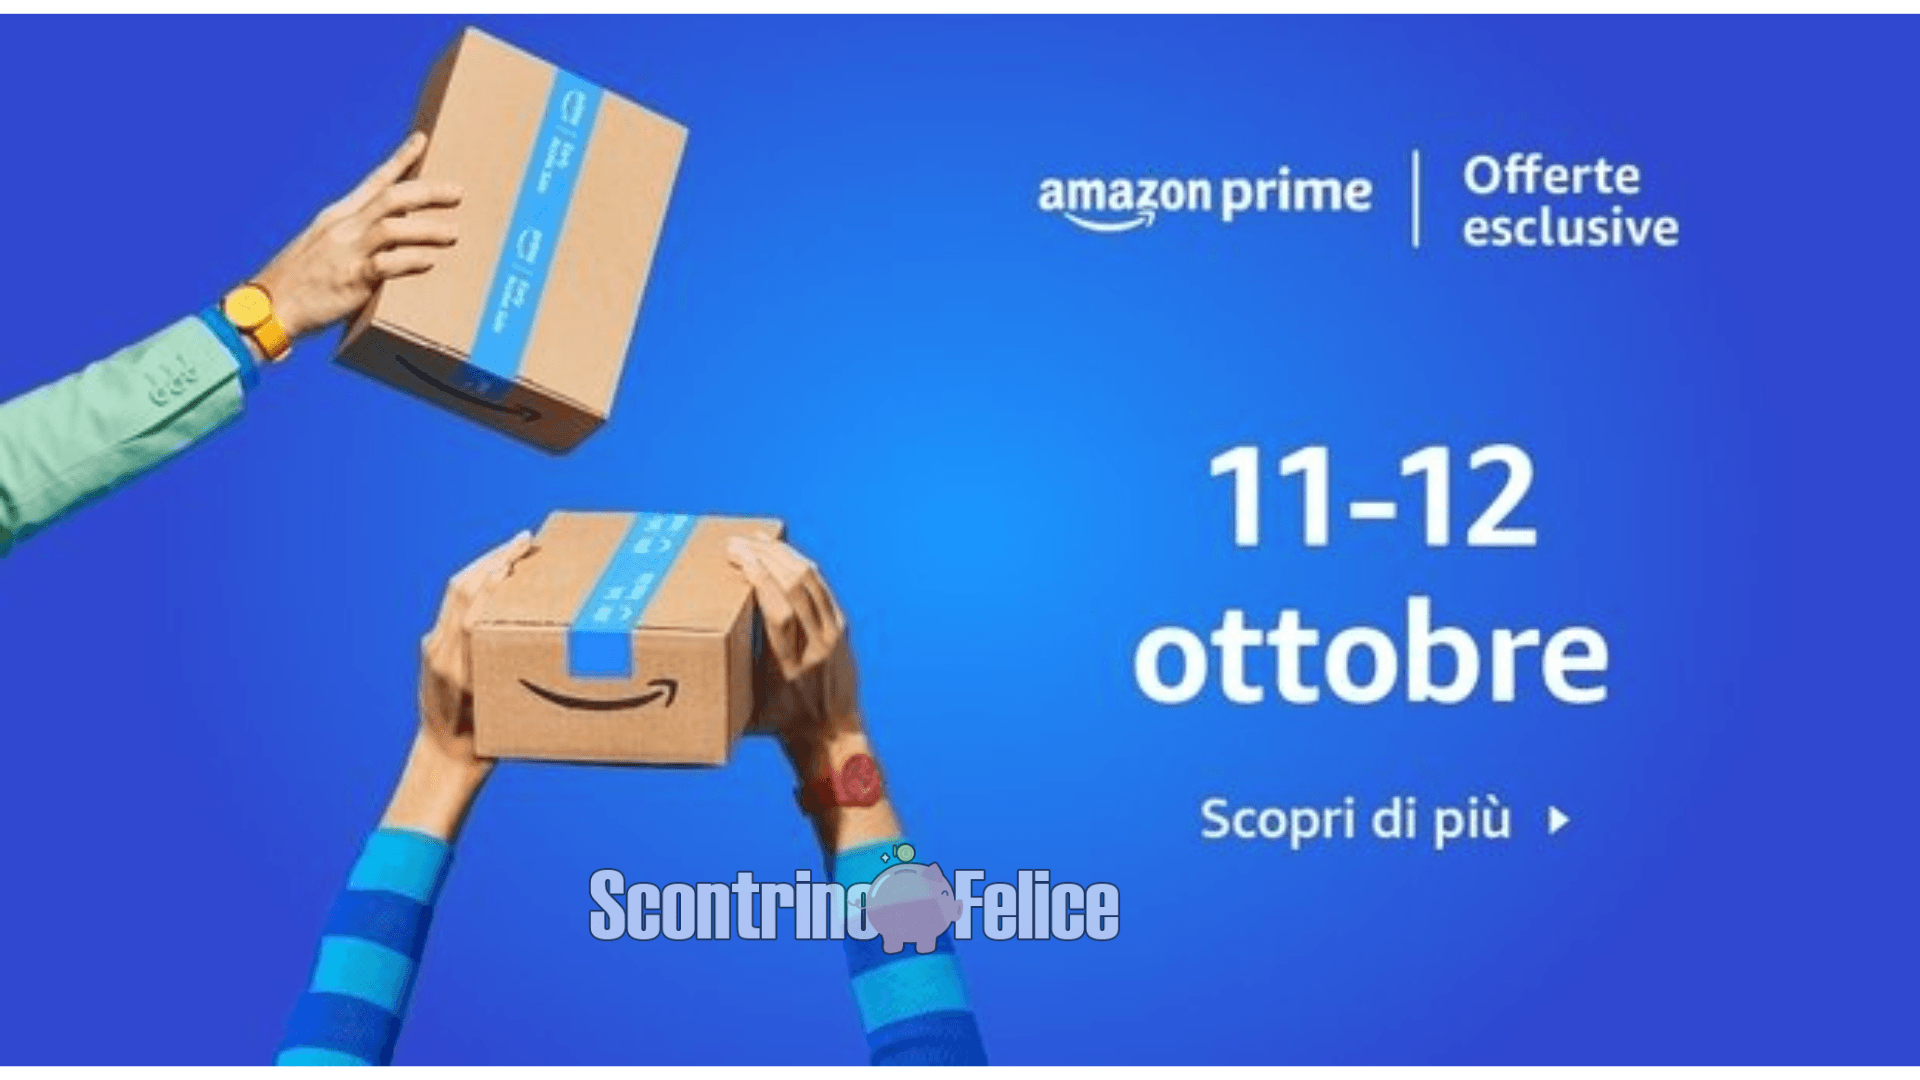 Offerte esclusive Amazon Prime 11-12 ottobre 2022: scopriamo le migliori! 1